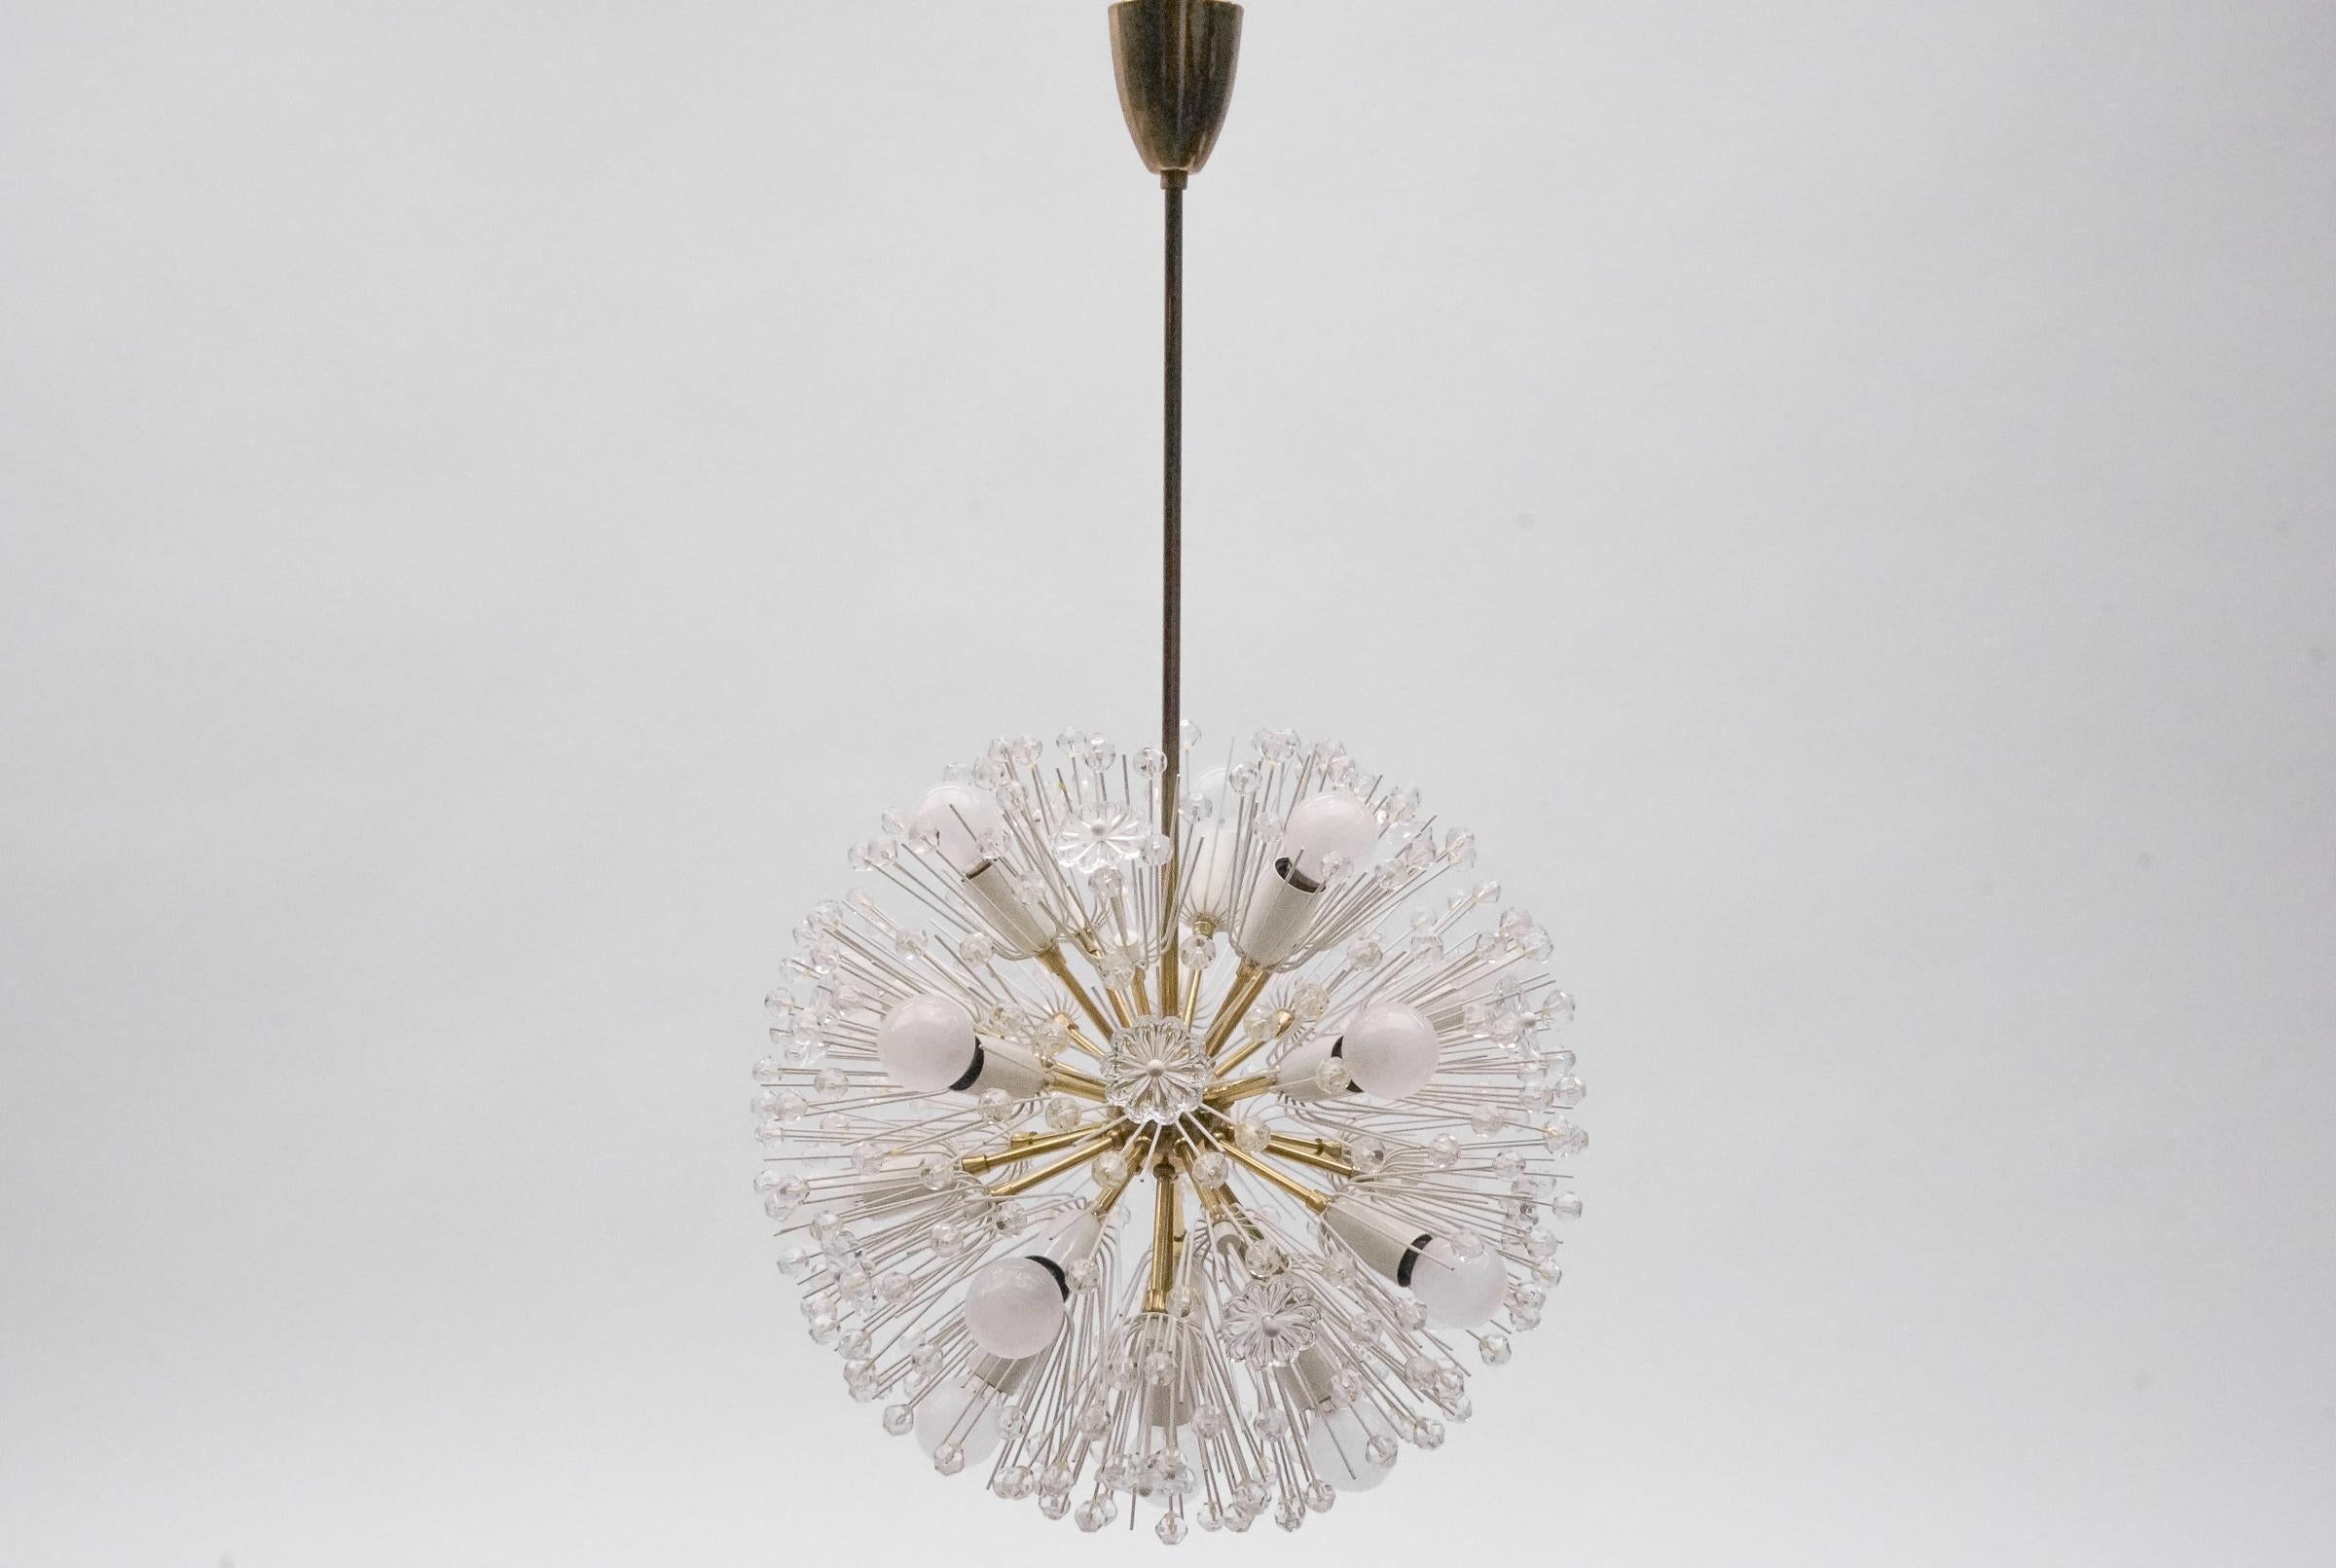 Magnifique lustre des années 1950.
La lampe, avec ses fleurs richement décorées et ses détails en laiton, a un aspect très luxueux et brille de mille feux.
Le Design/One et les matériaux utilisés créent une grande lumière scintillante.
Une lampe